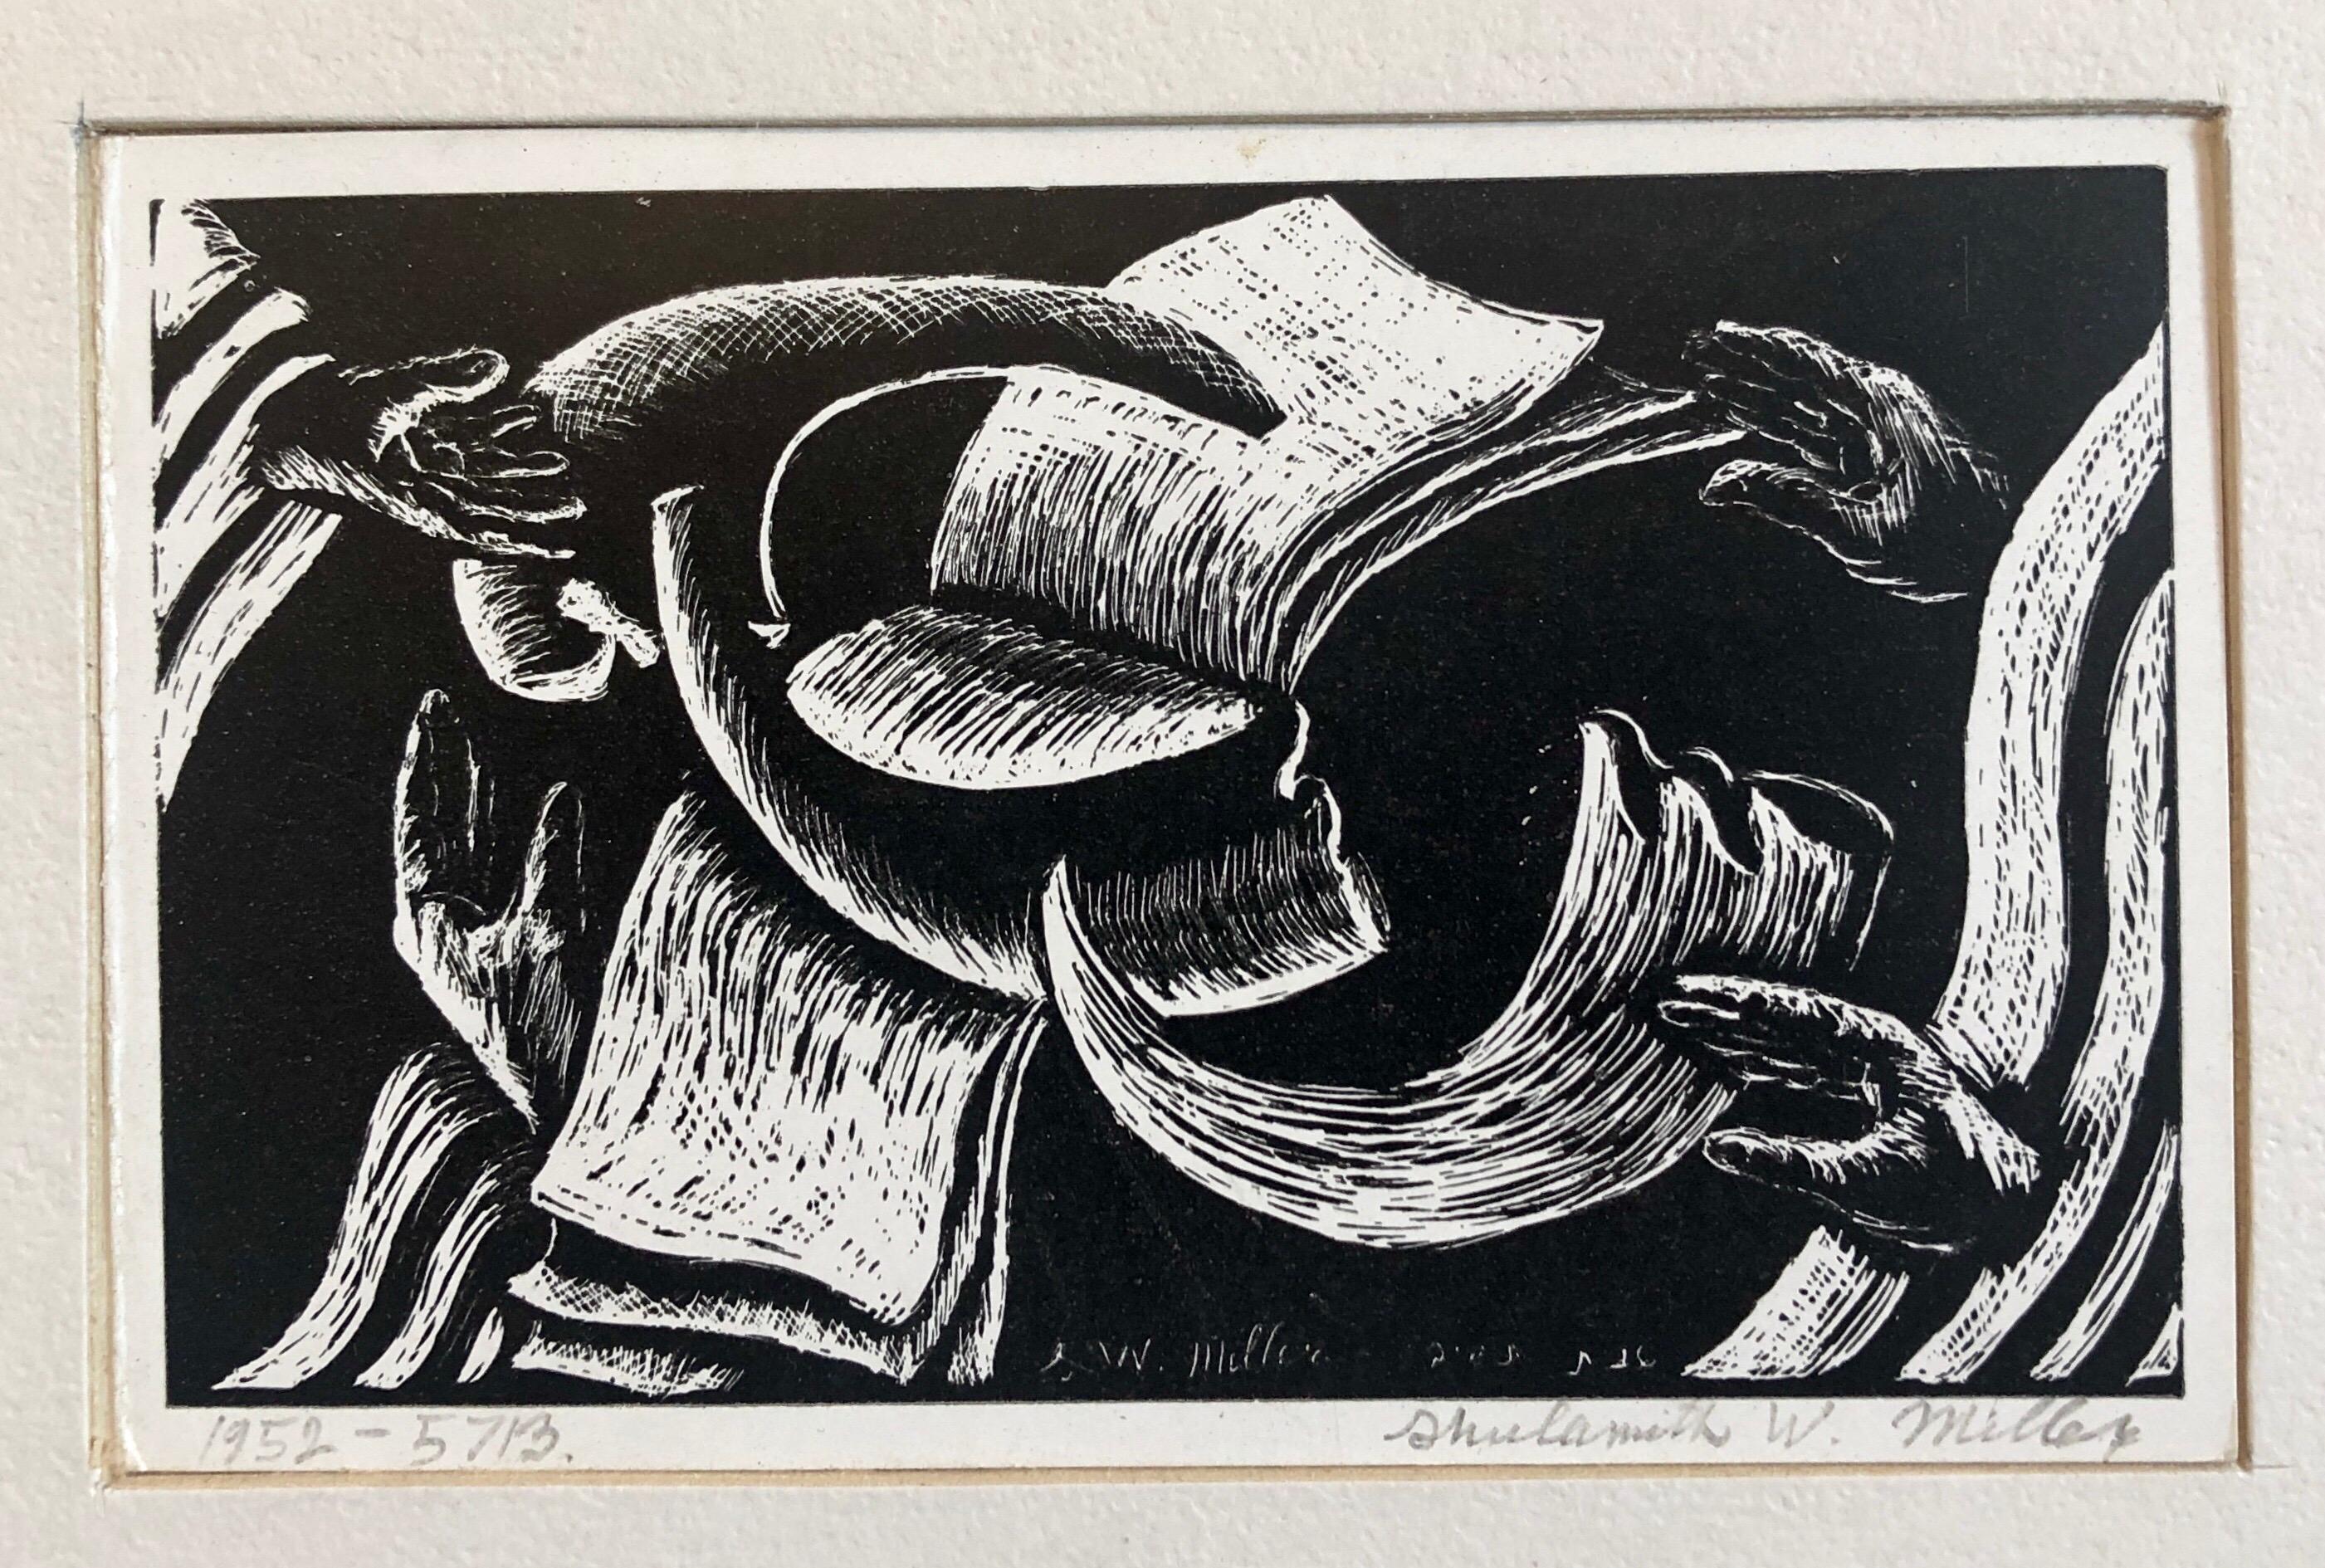 Shana Tova, Neujahr Holzschnitt Israelisches Judaica Frühe Bezalel Schule Frau Künstlerin – Print von Shulamith Wittenberg Miller